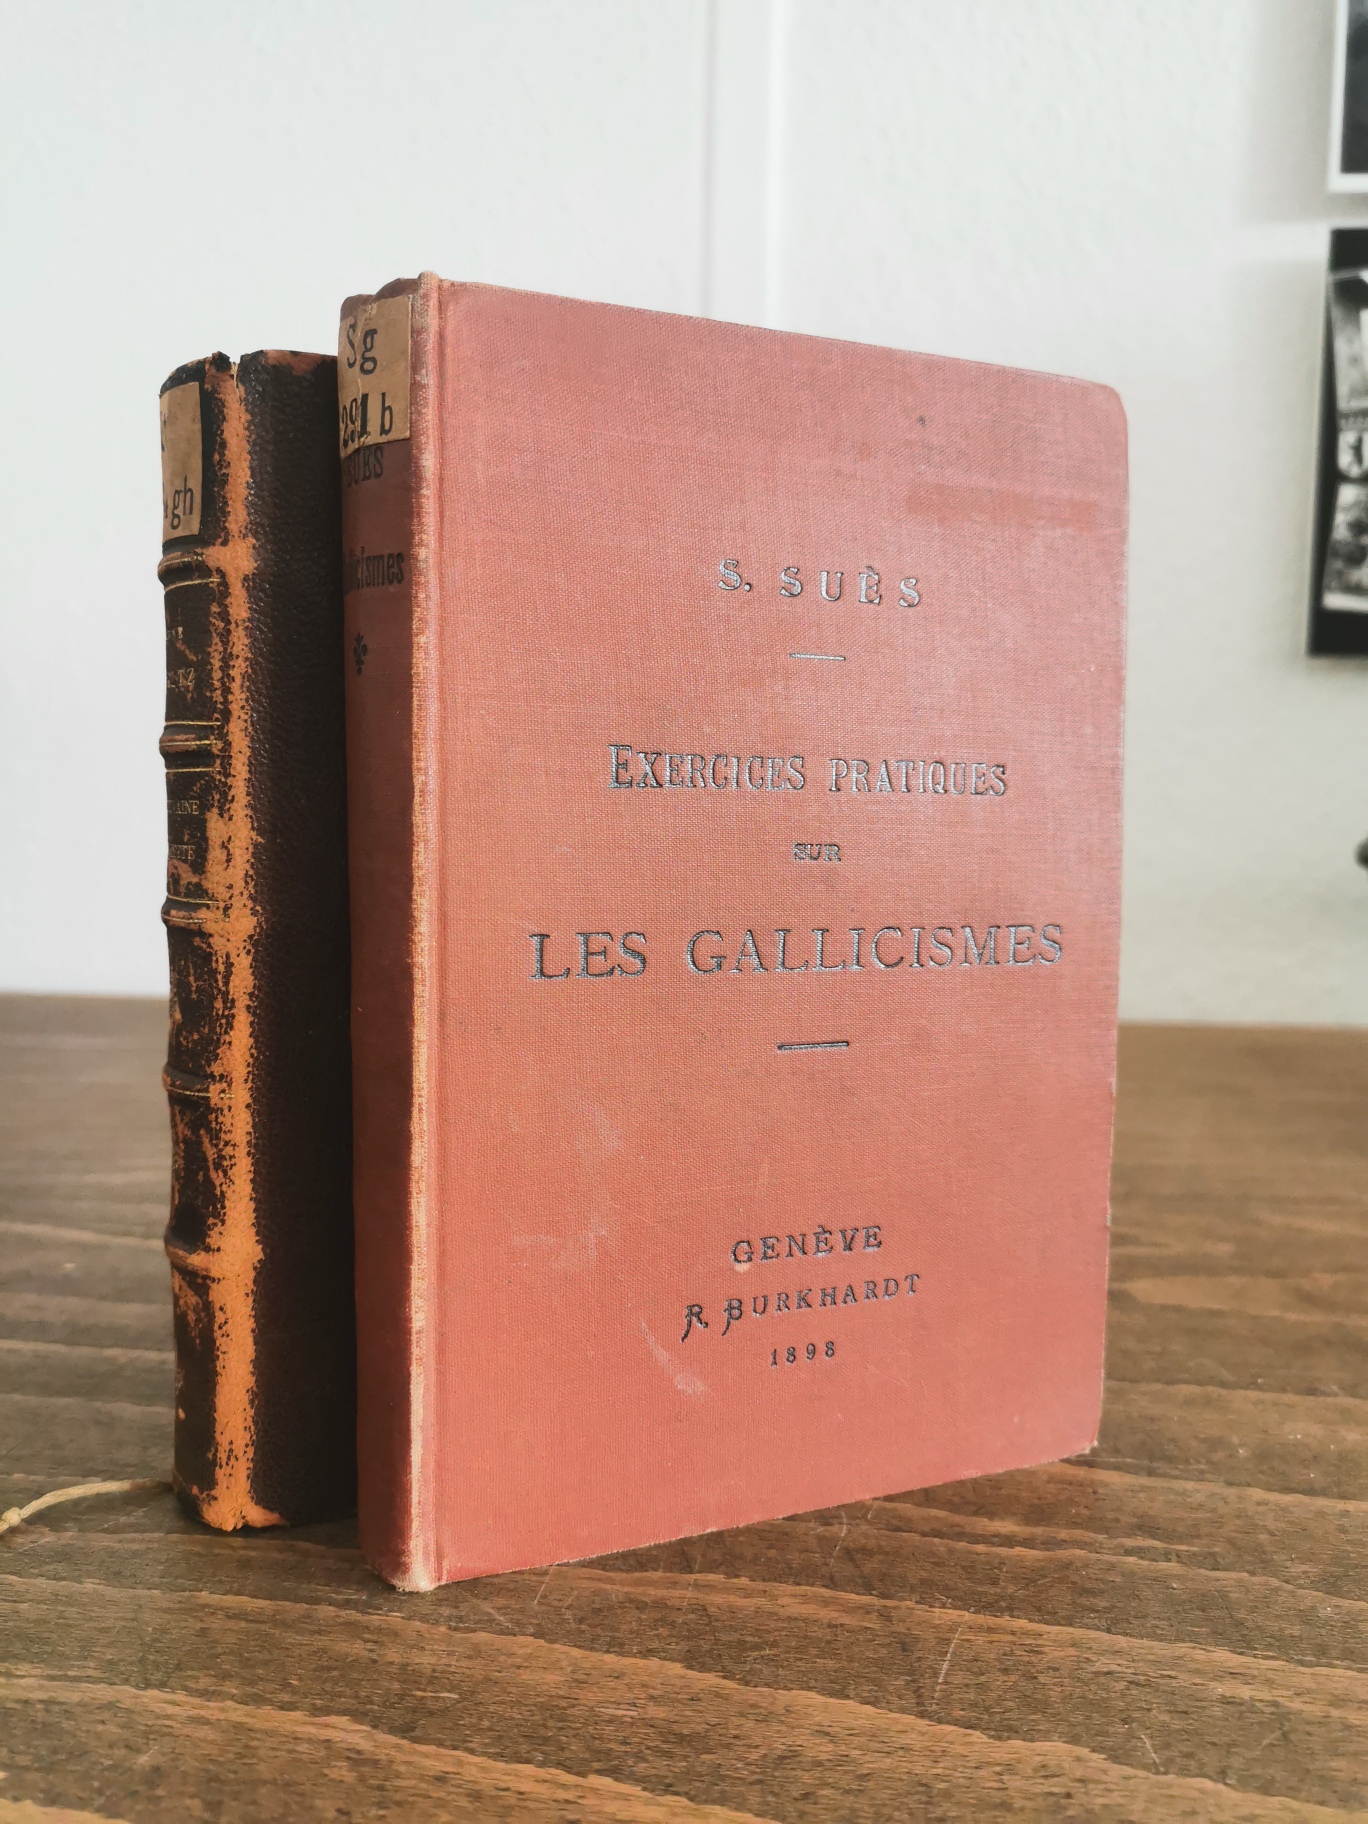 Foto von altem, rotem Buch mit dem Titel: Les Gallicismes